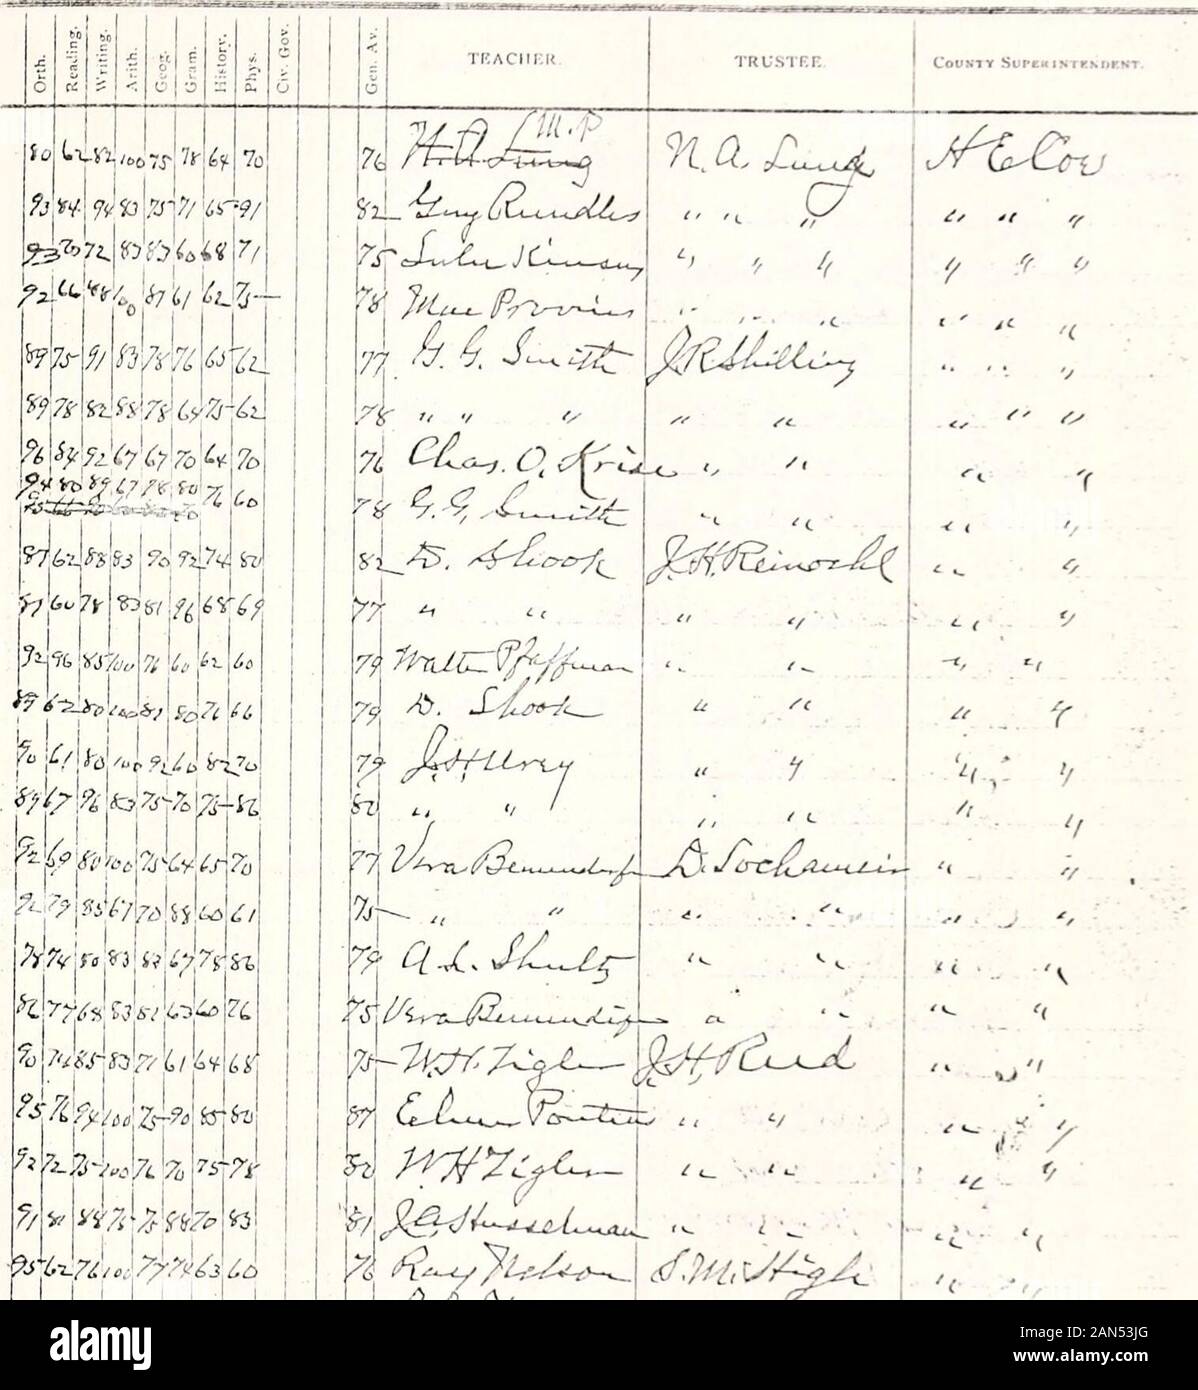 Record Of Township Graduates Dekalb County Indiana 1885 1915 N Vr C F 5 Rv6 1 Y L Ja Ui L N T Li Dvda F C Mg Cll I S7 C I F R I